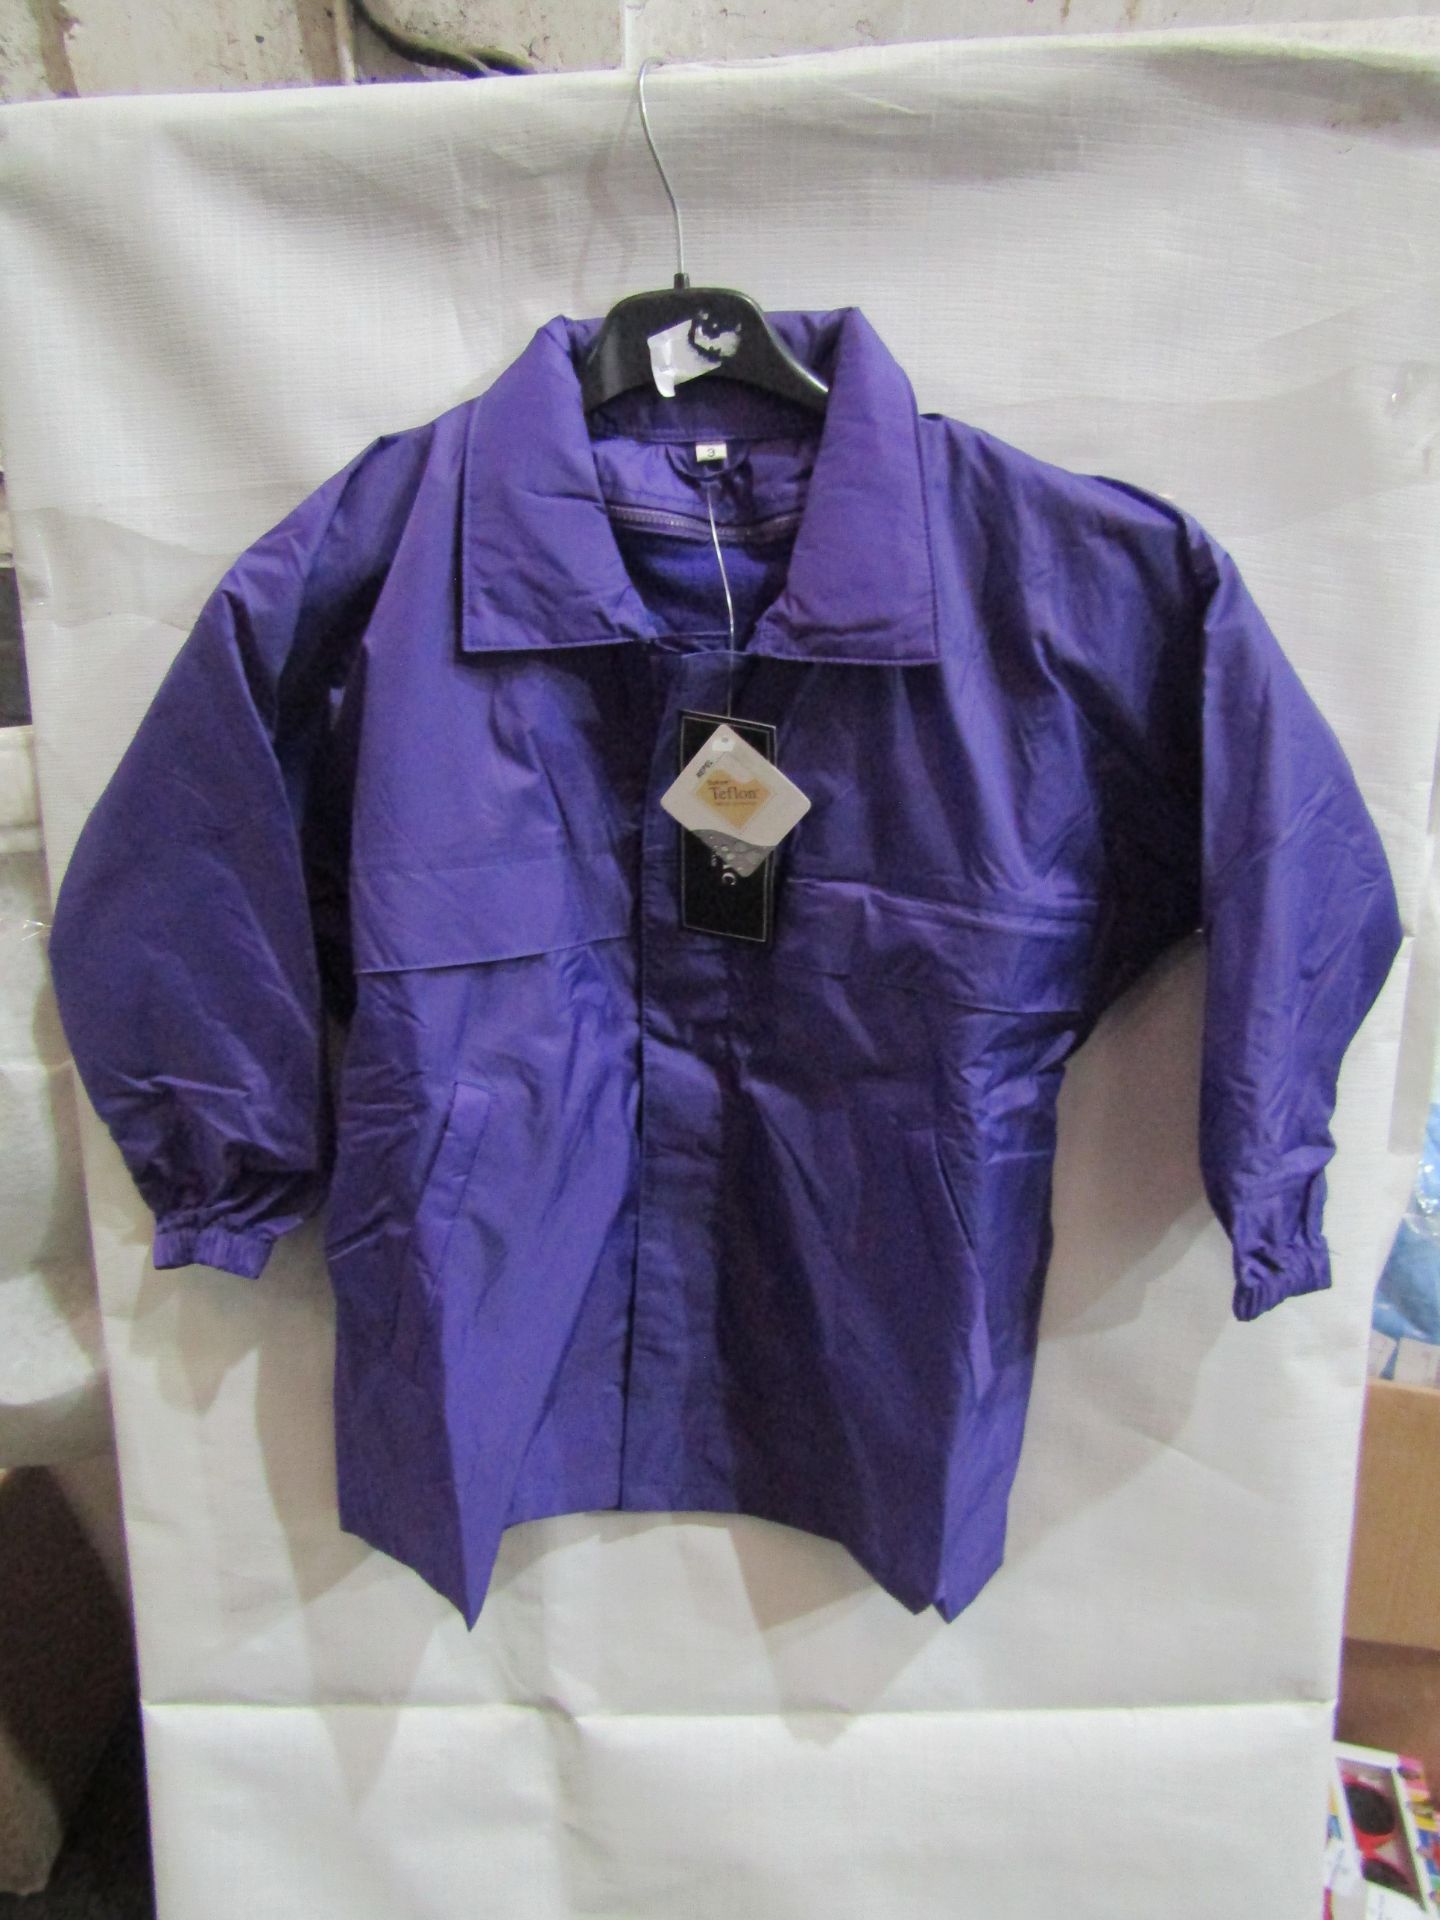 Rainmac Ladies Purple Padded Rain Coat, Size: 10 - Unused & Packaged.